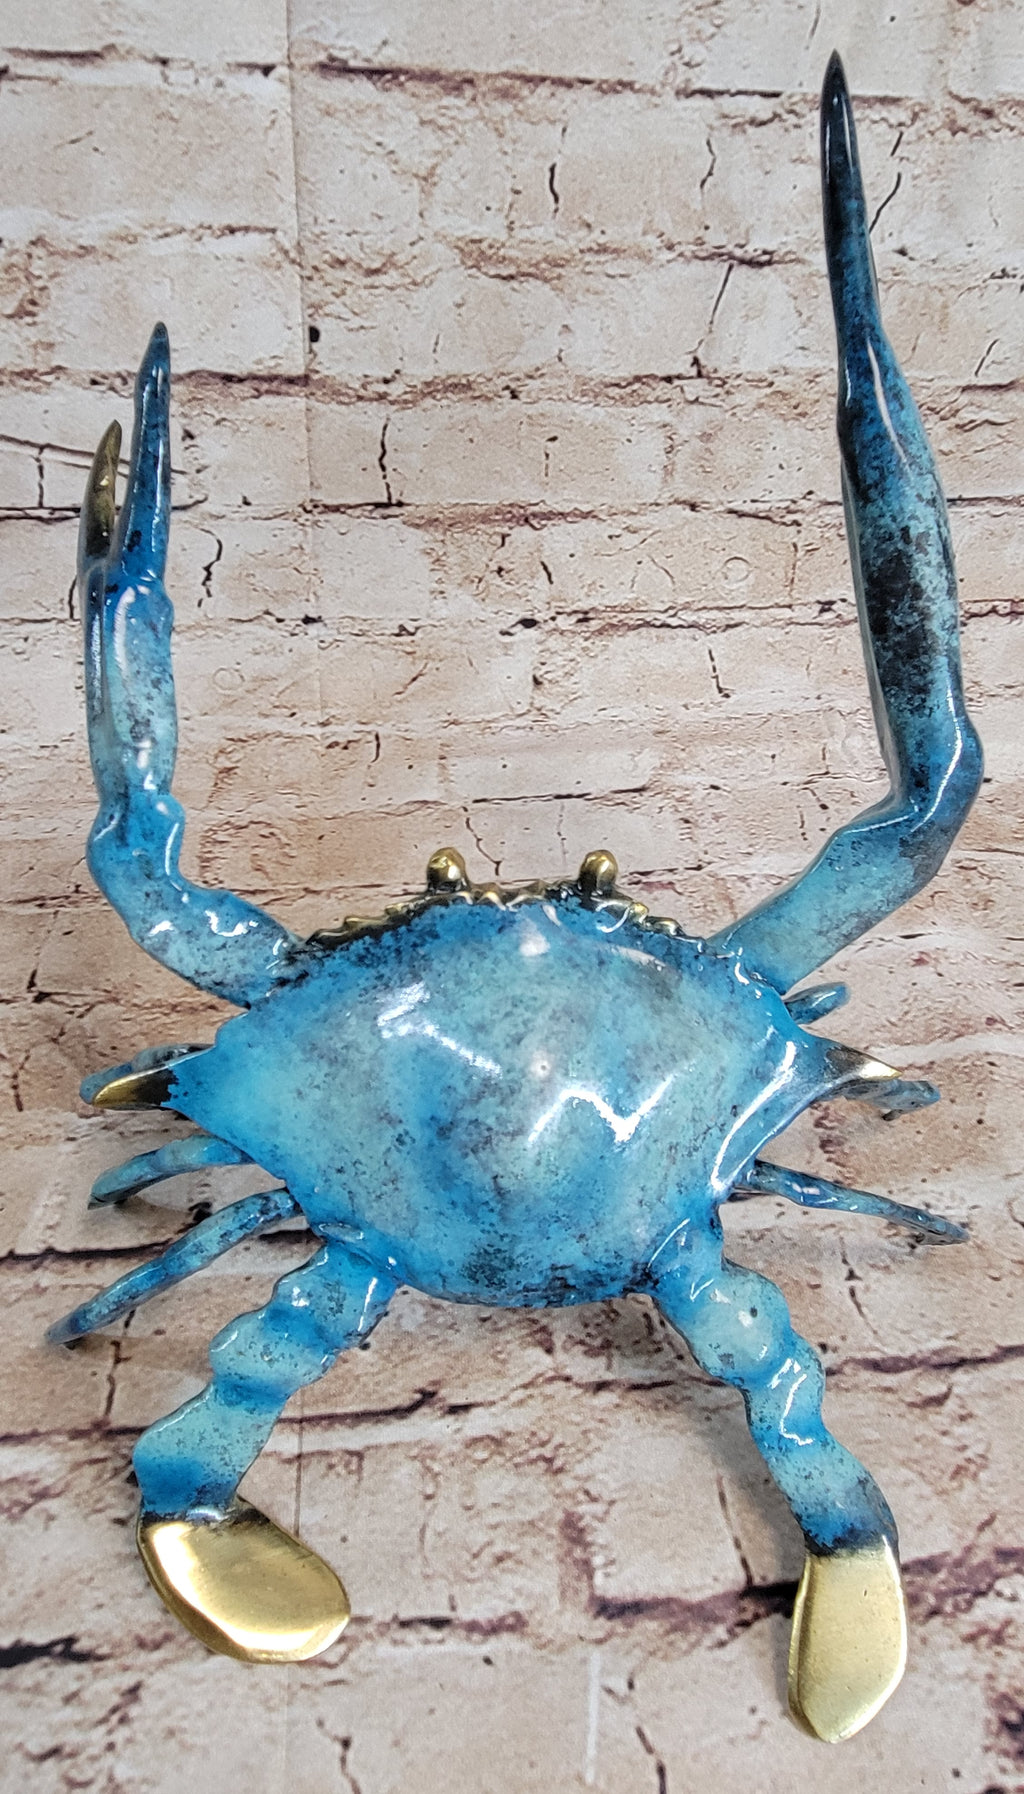 Crawling Crab Abstract Metal Wall Sculpture